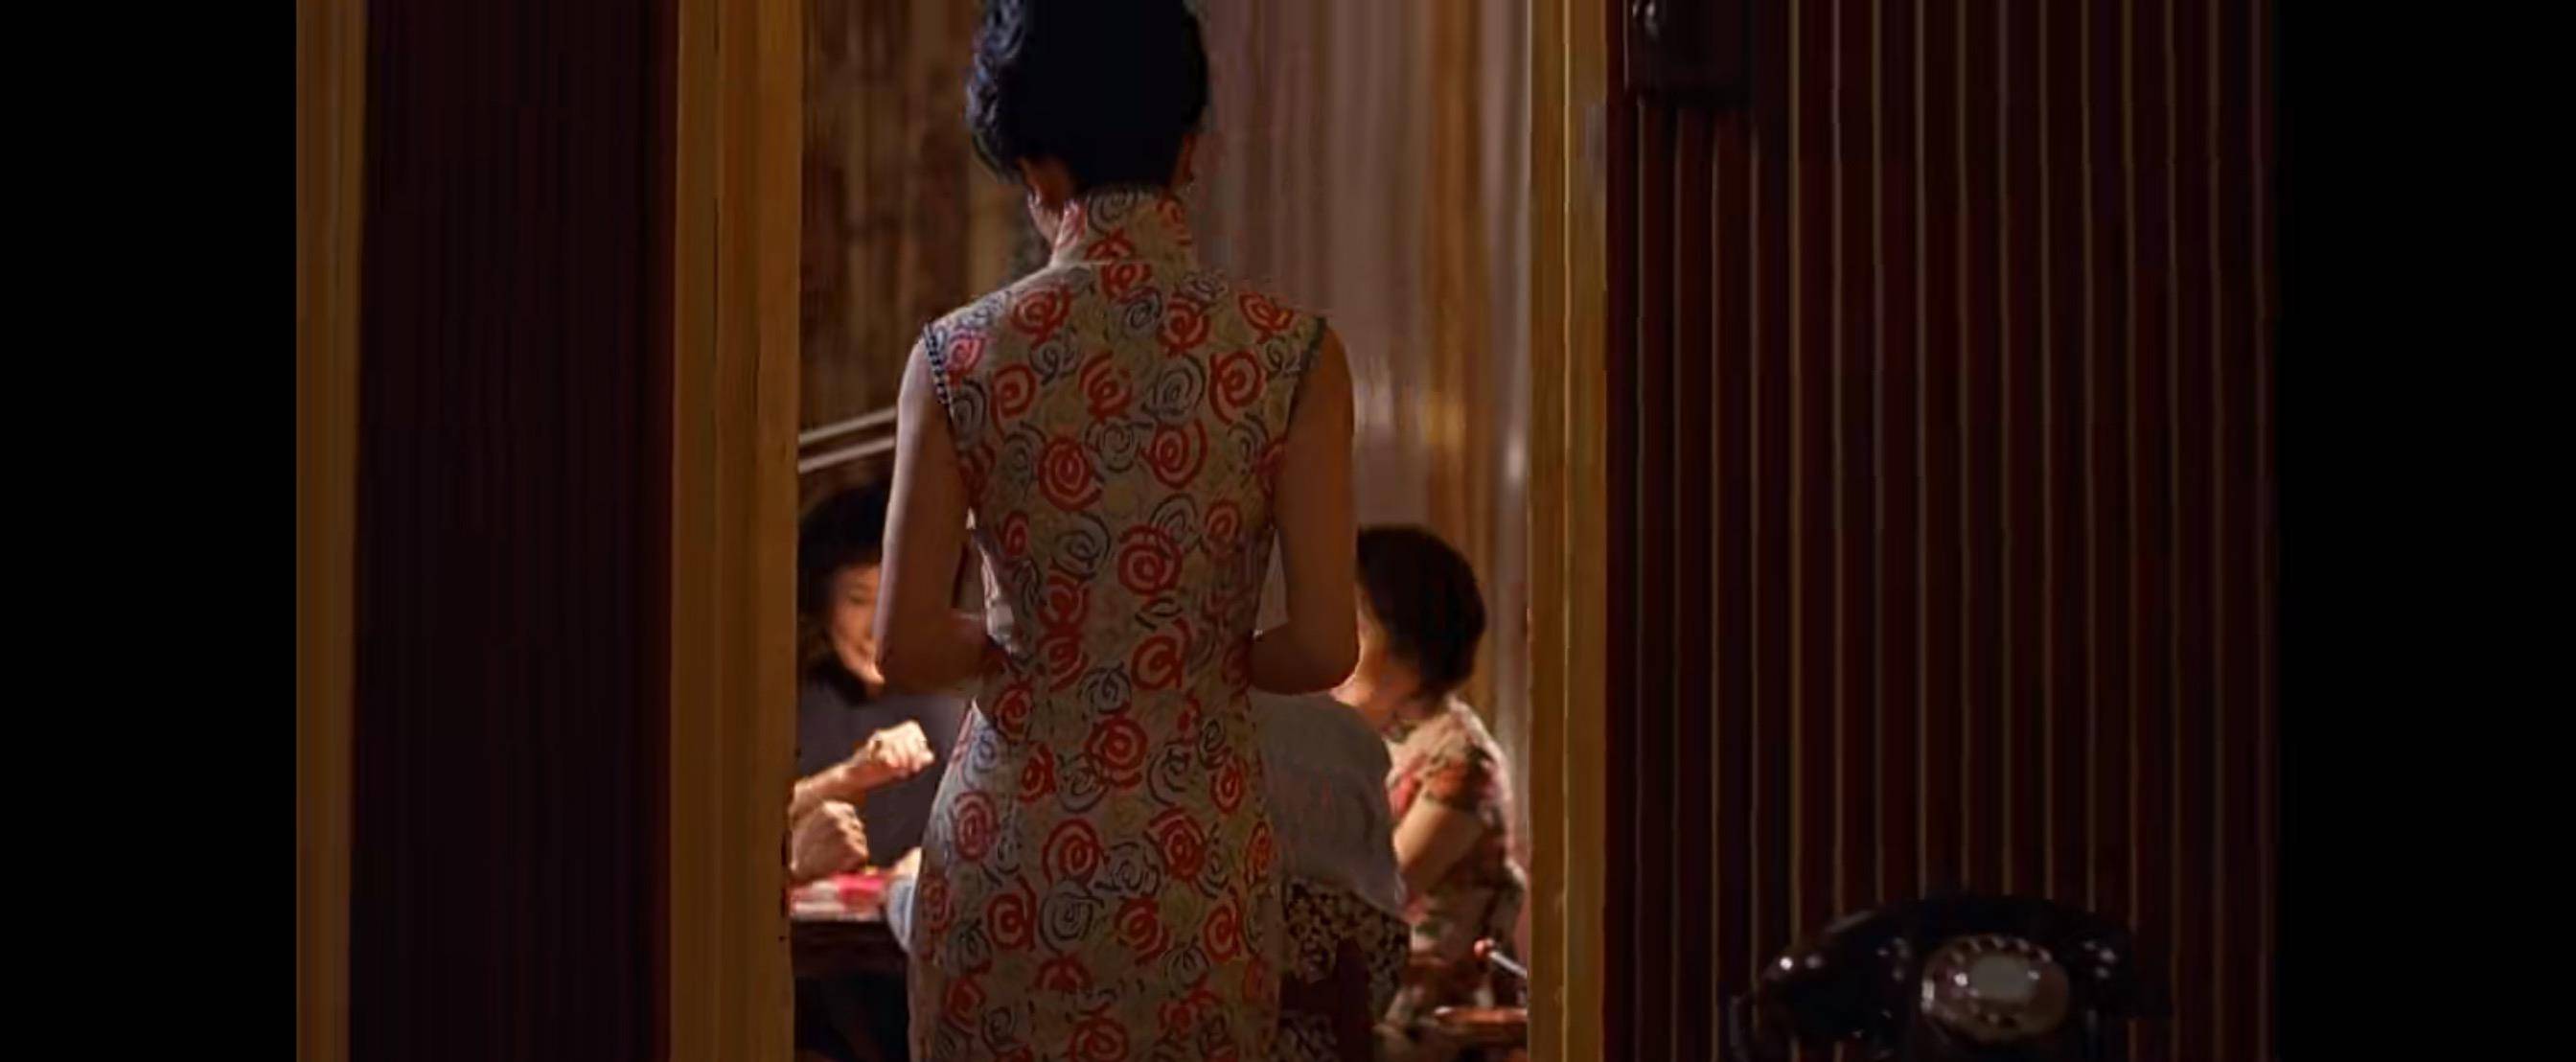 《花样年华》深度解析二:岁月不败美人,张曼玉的一场旗袍大秀